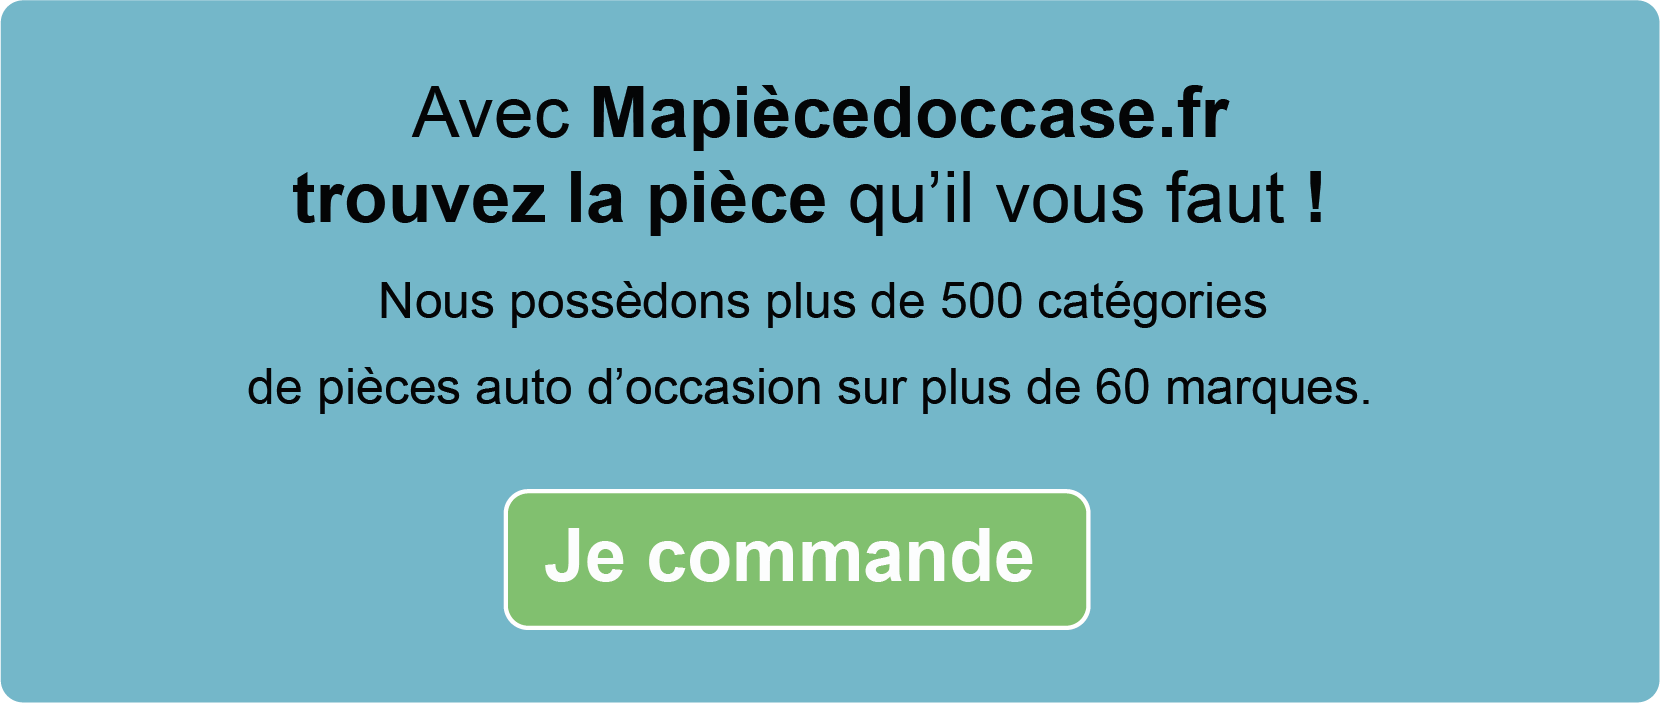 Commandez des pièces auto d'occasion sur Mapiècedoccase.fr